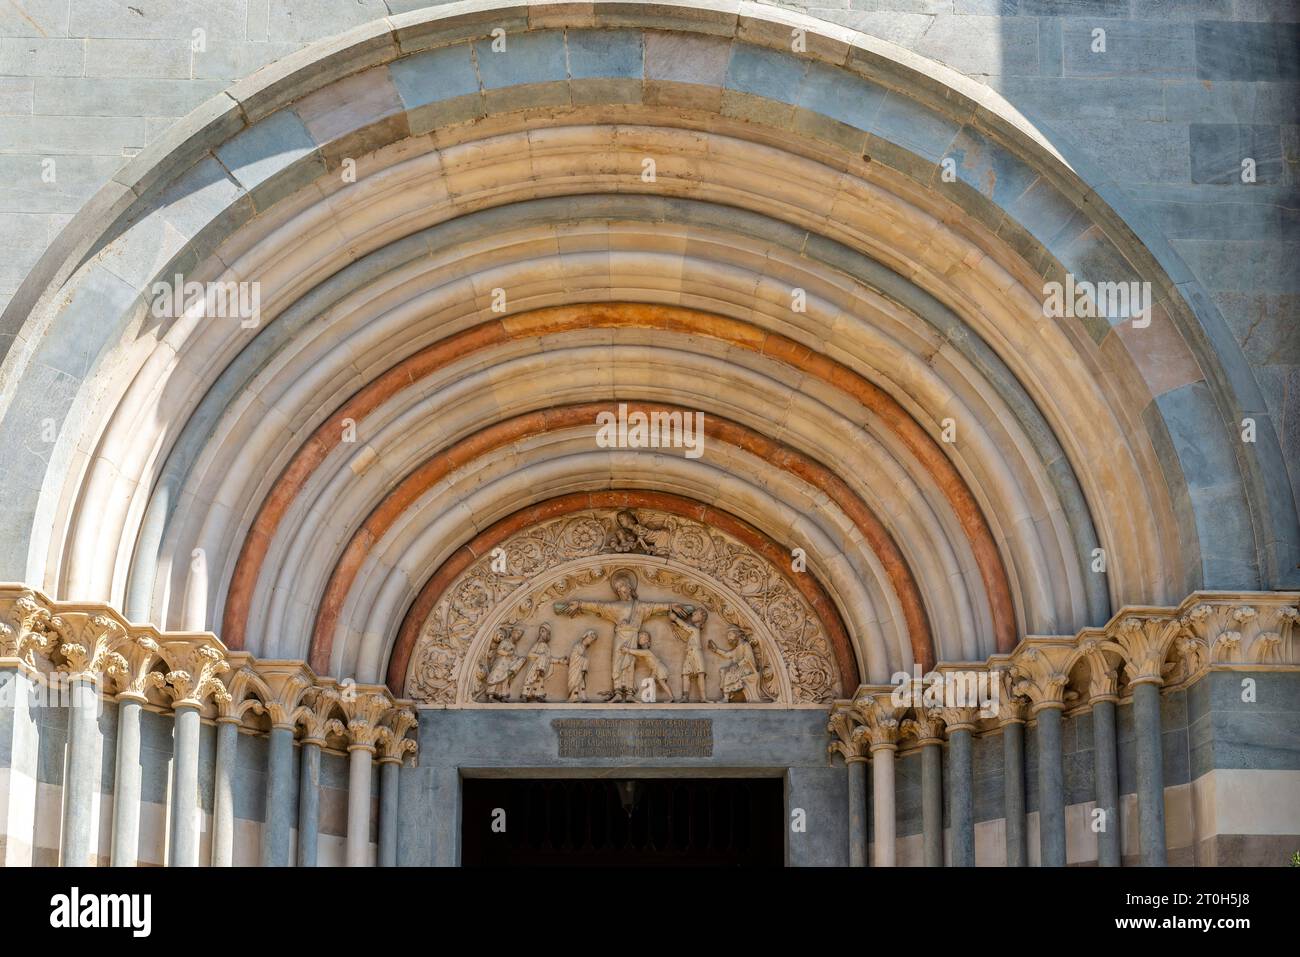 La lunetta del portale centrale presenta un rilievo raffigurante il Martirio di San Andrea, Basilica di Sant'Andreain Vercelli, Piemonte, Italia settentrionale Foto Stock